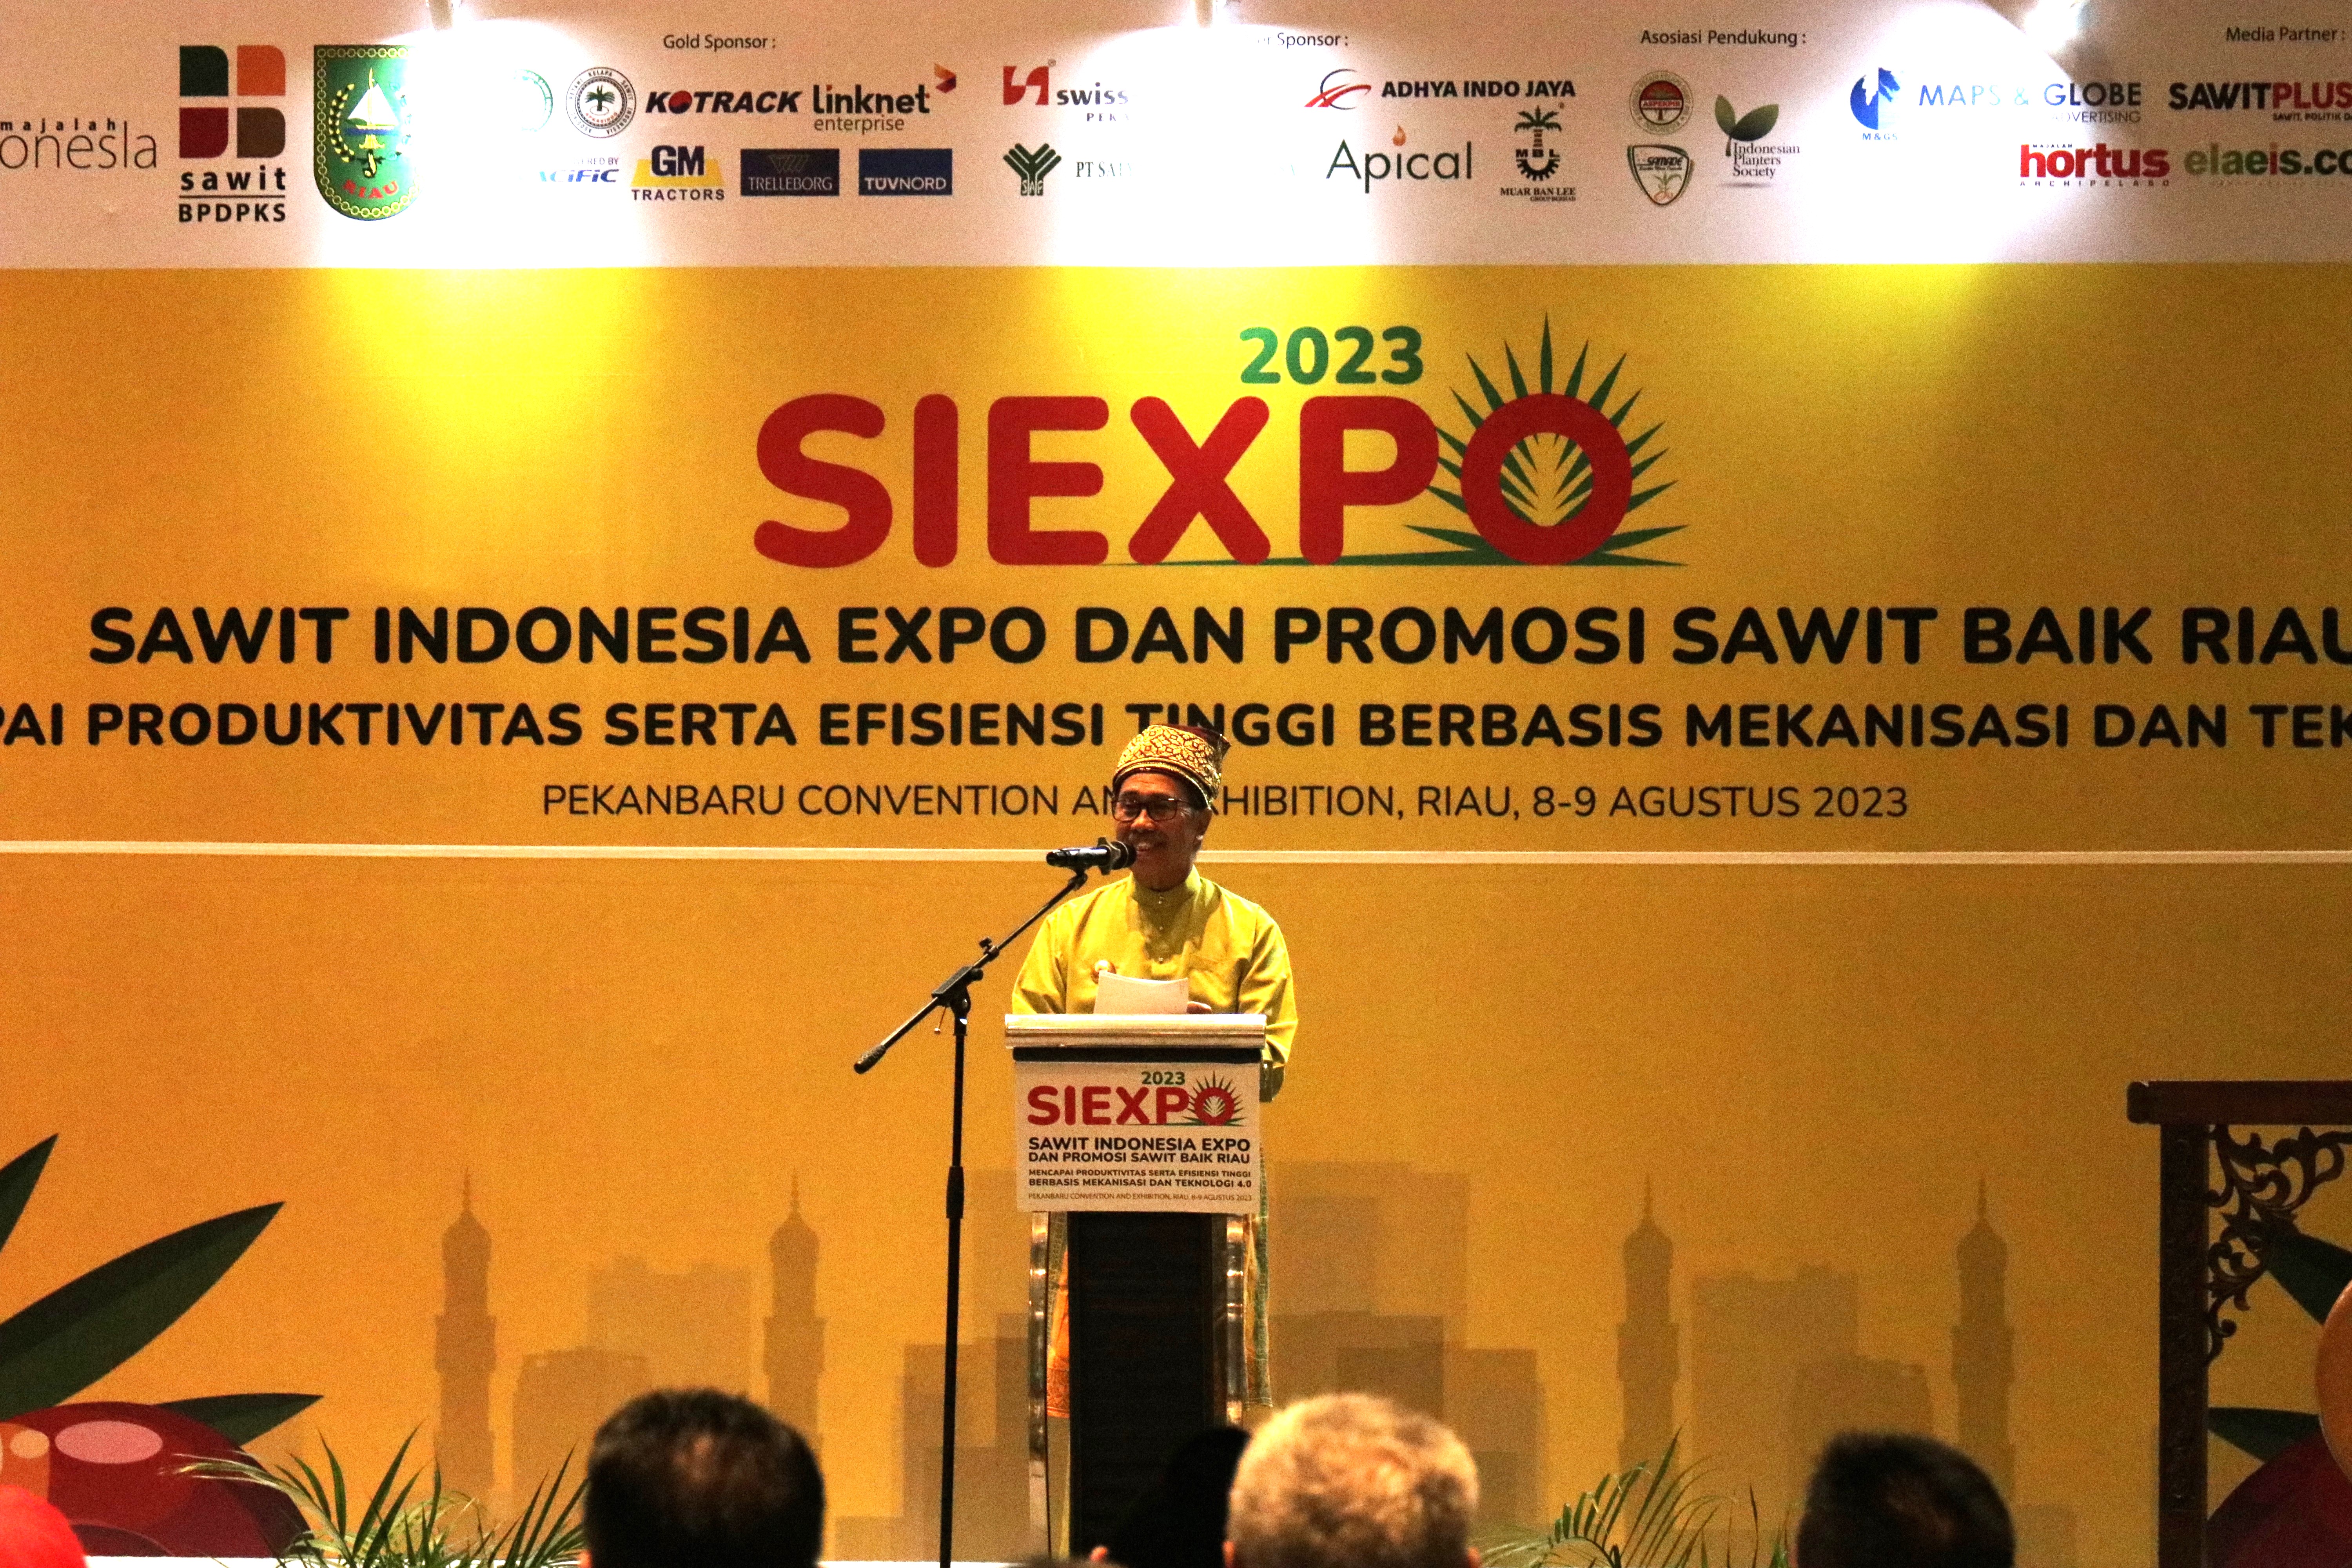 PPKS Hadir pada Event Sawit Indonesia Expo 2023 di Pekanbaru